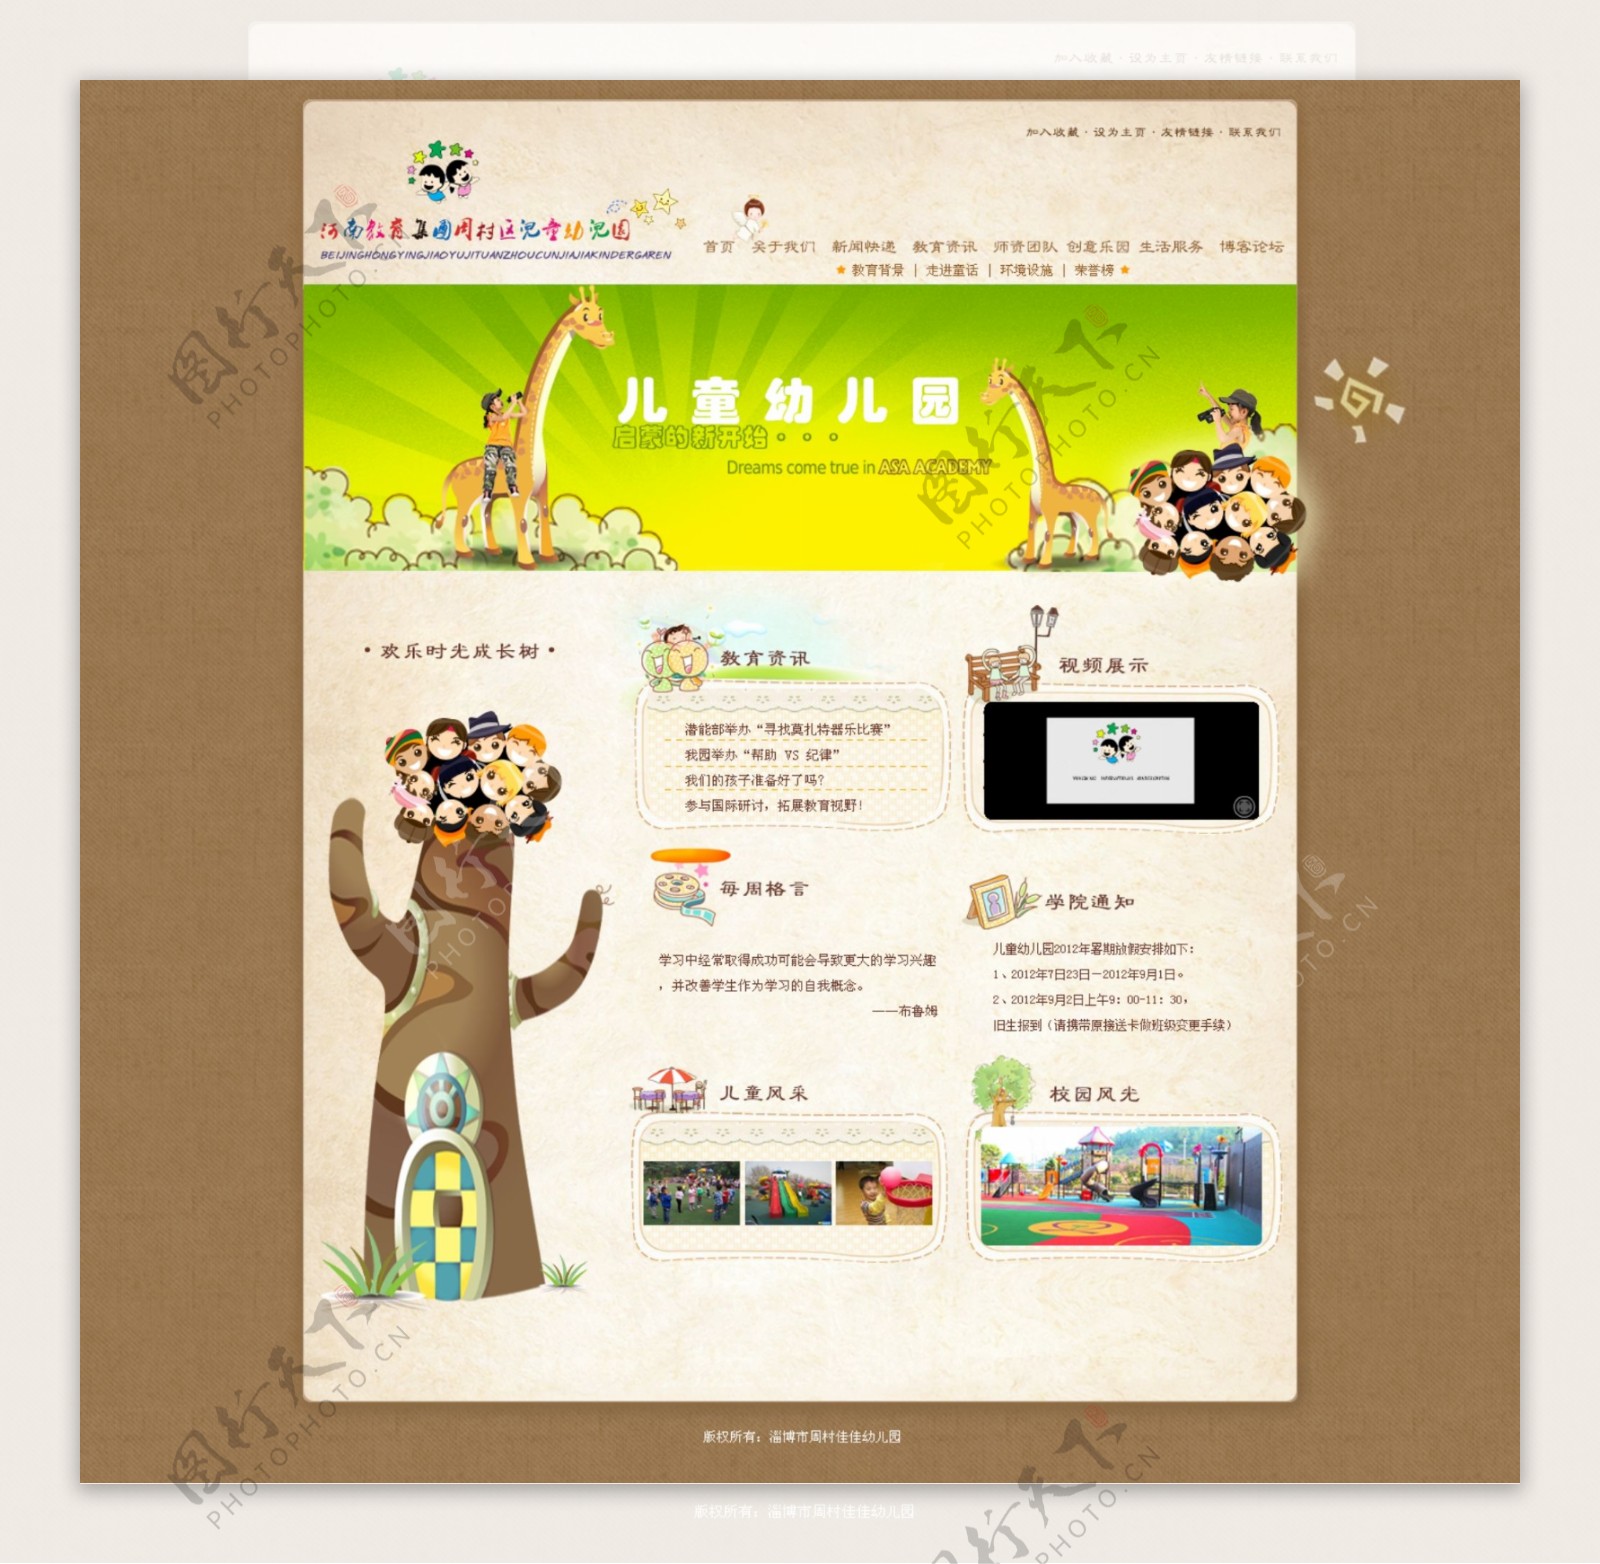 教育机构网站模版网页设计